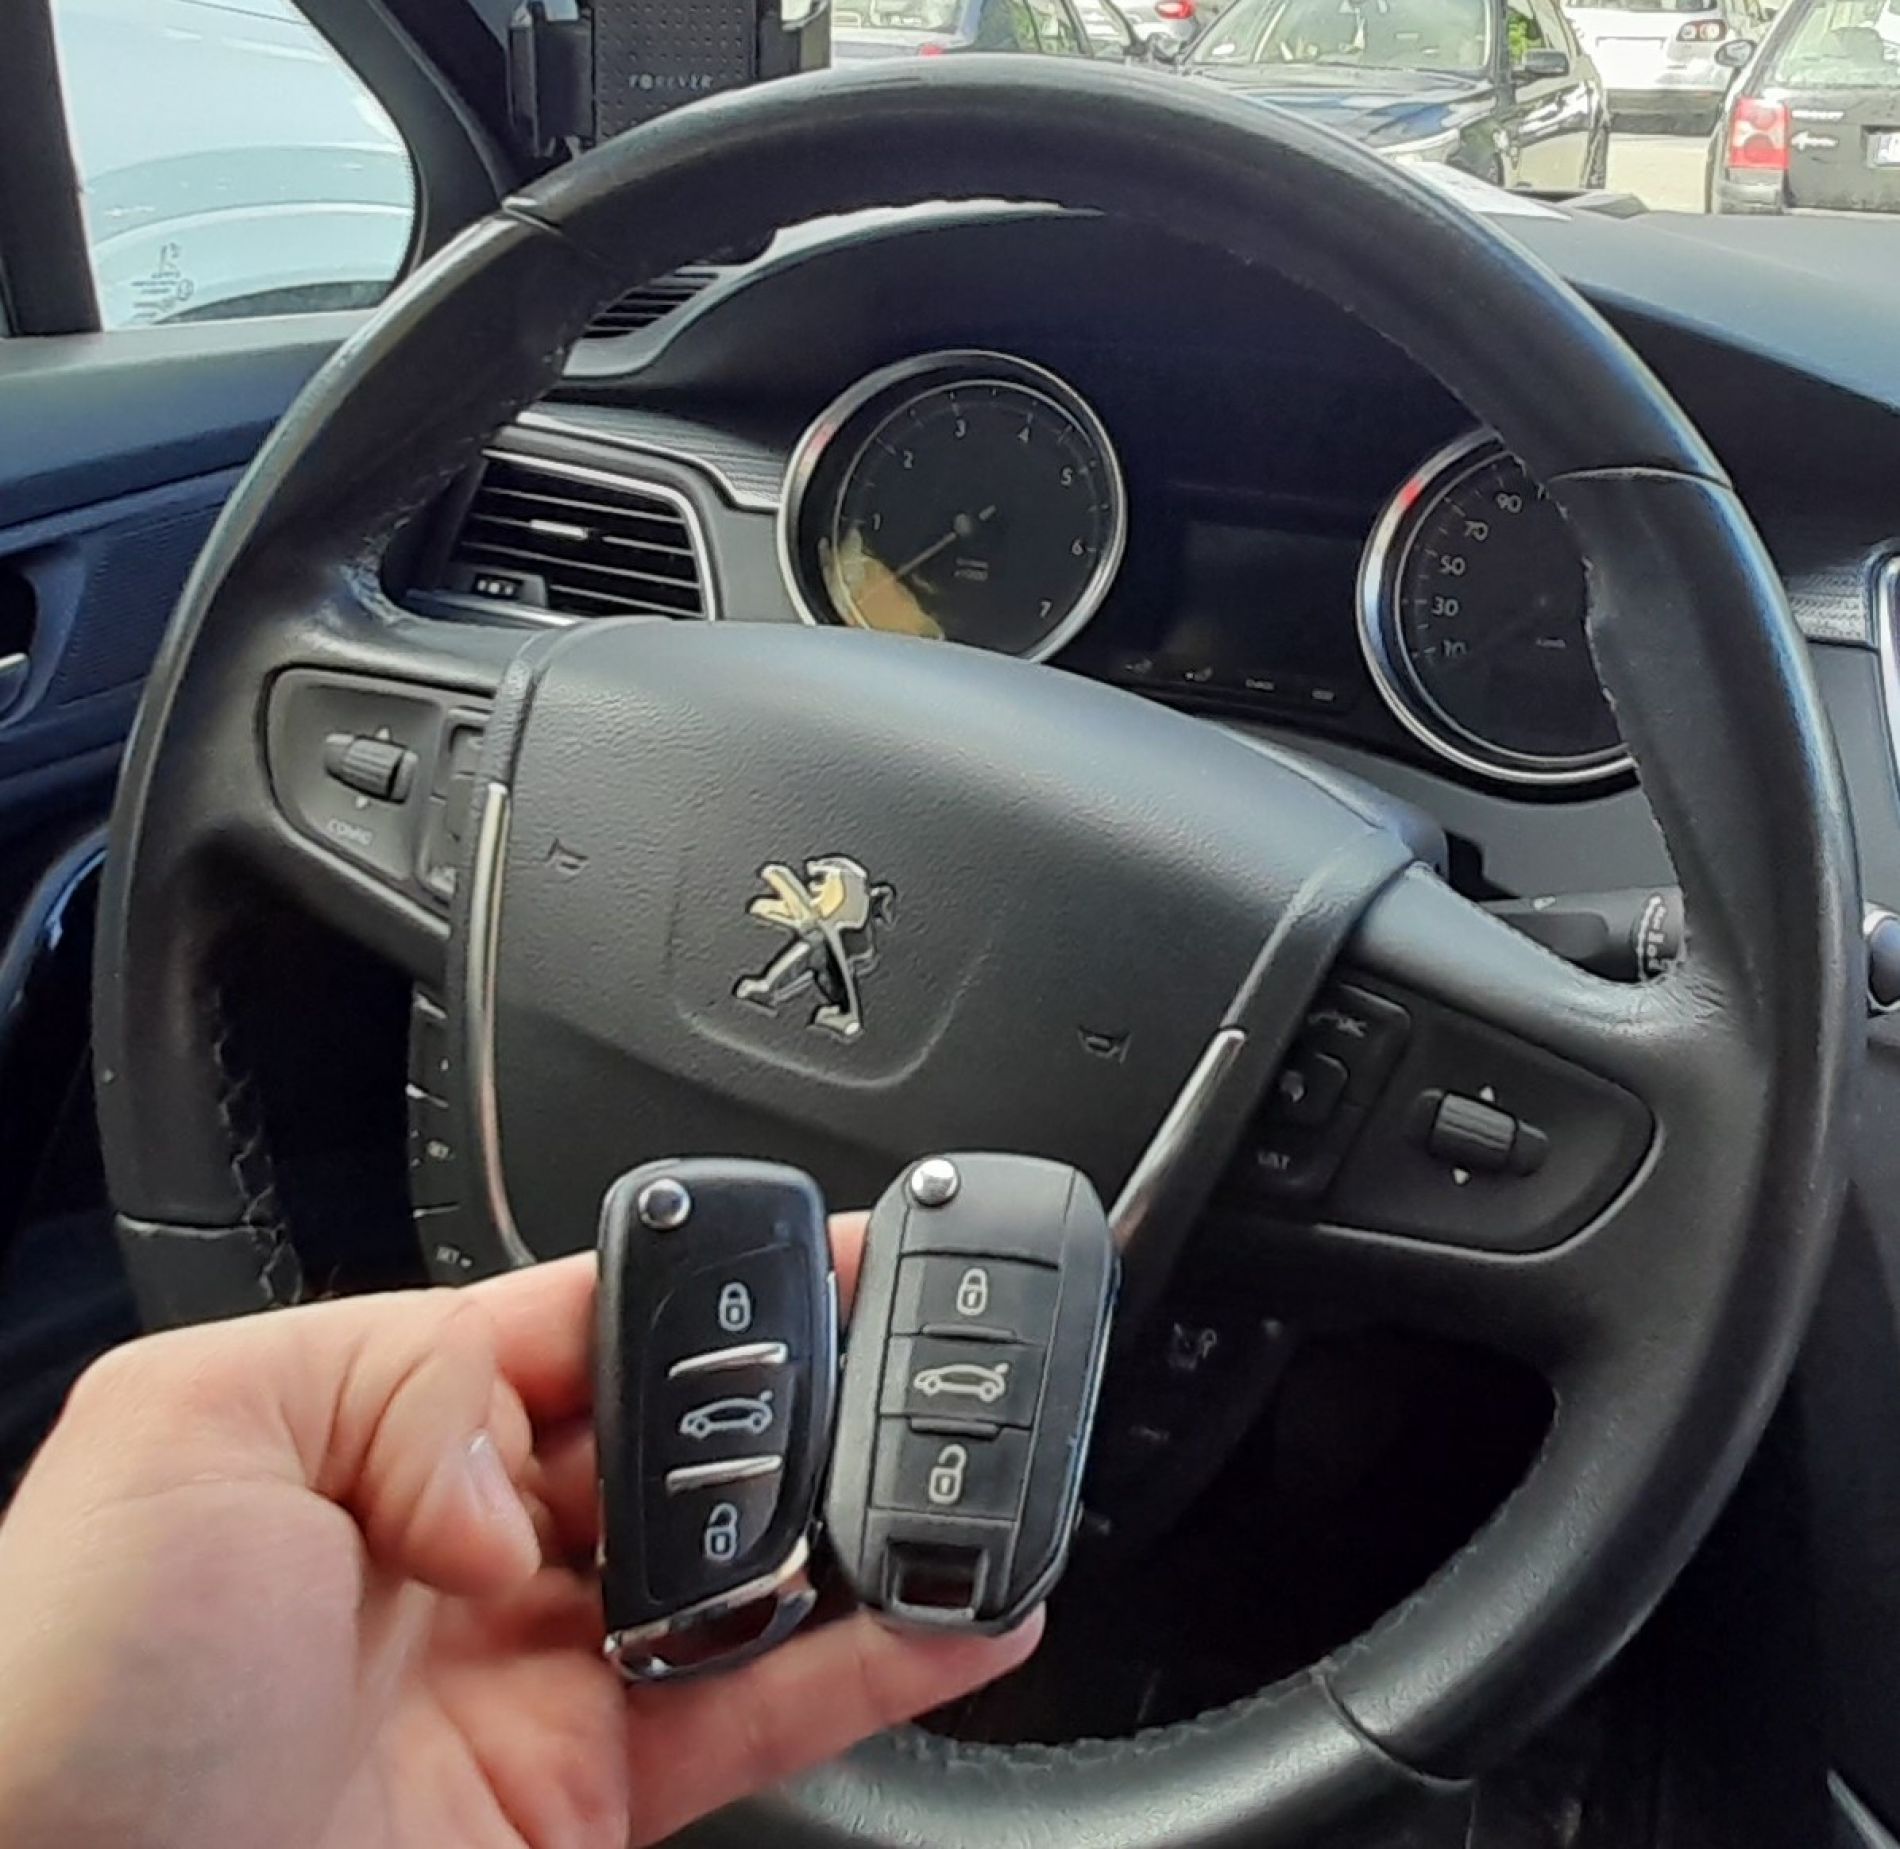 Programowanie klucza do auta Peugeot 508 z 2014 roku